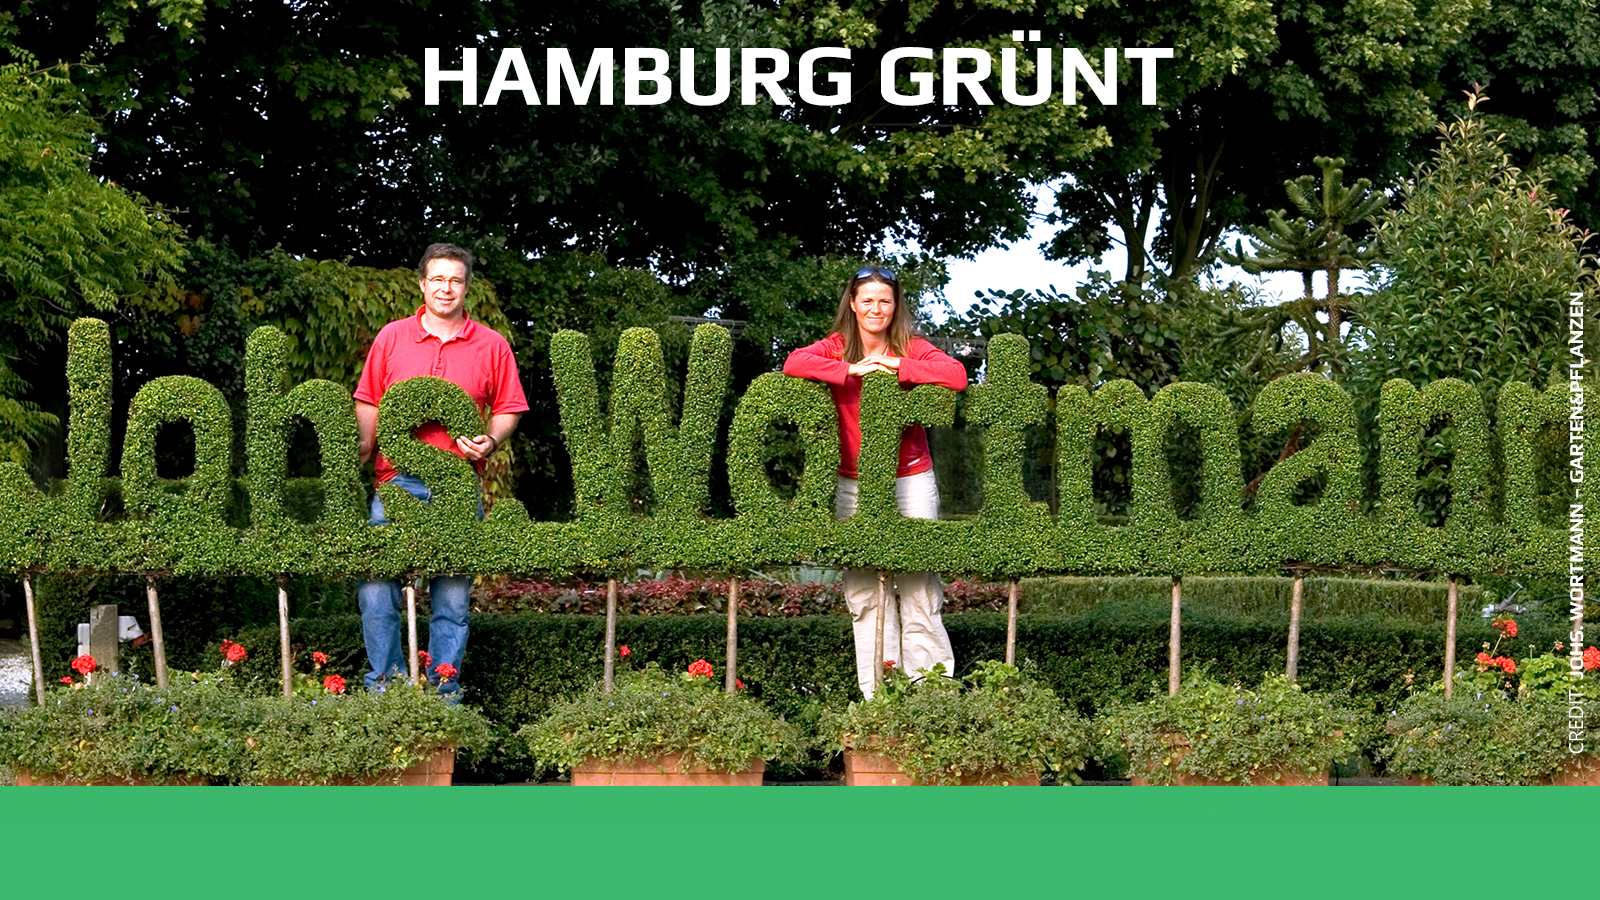 Hamburg grünt